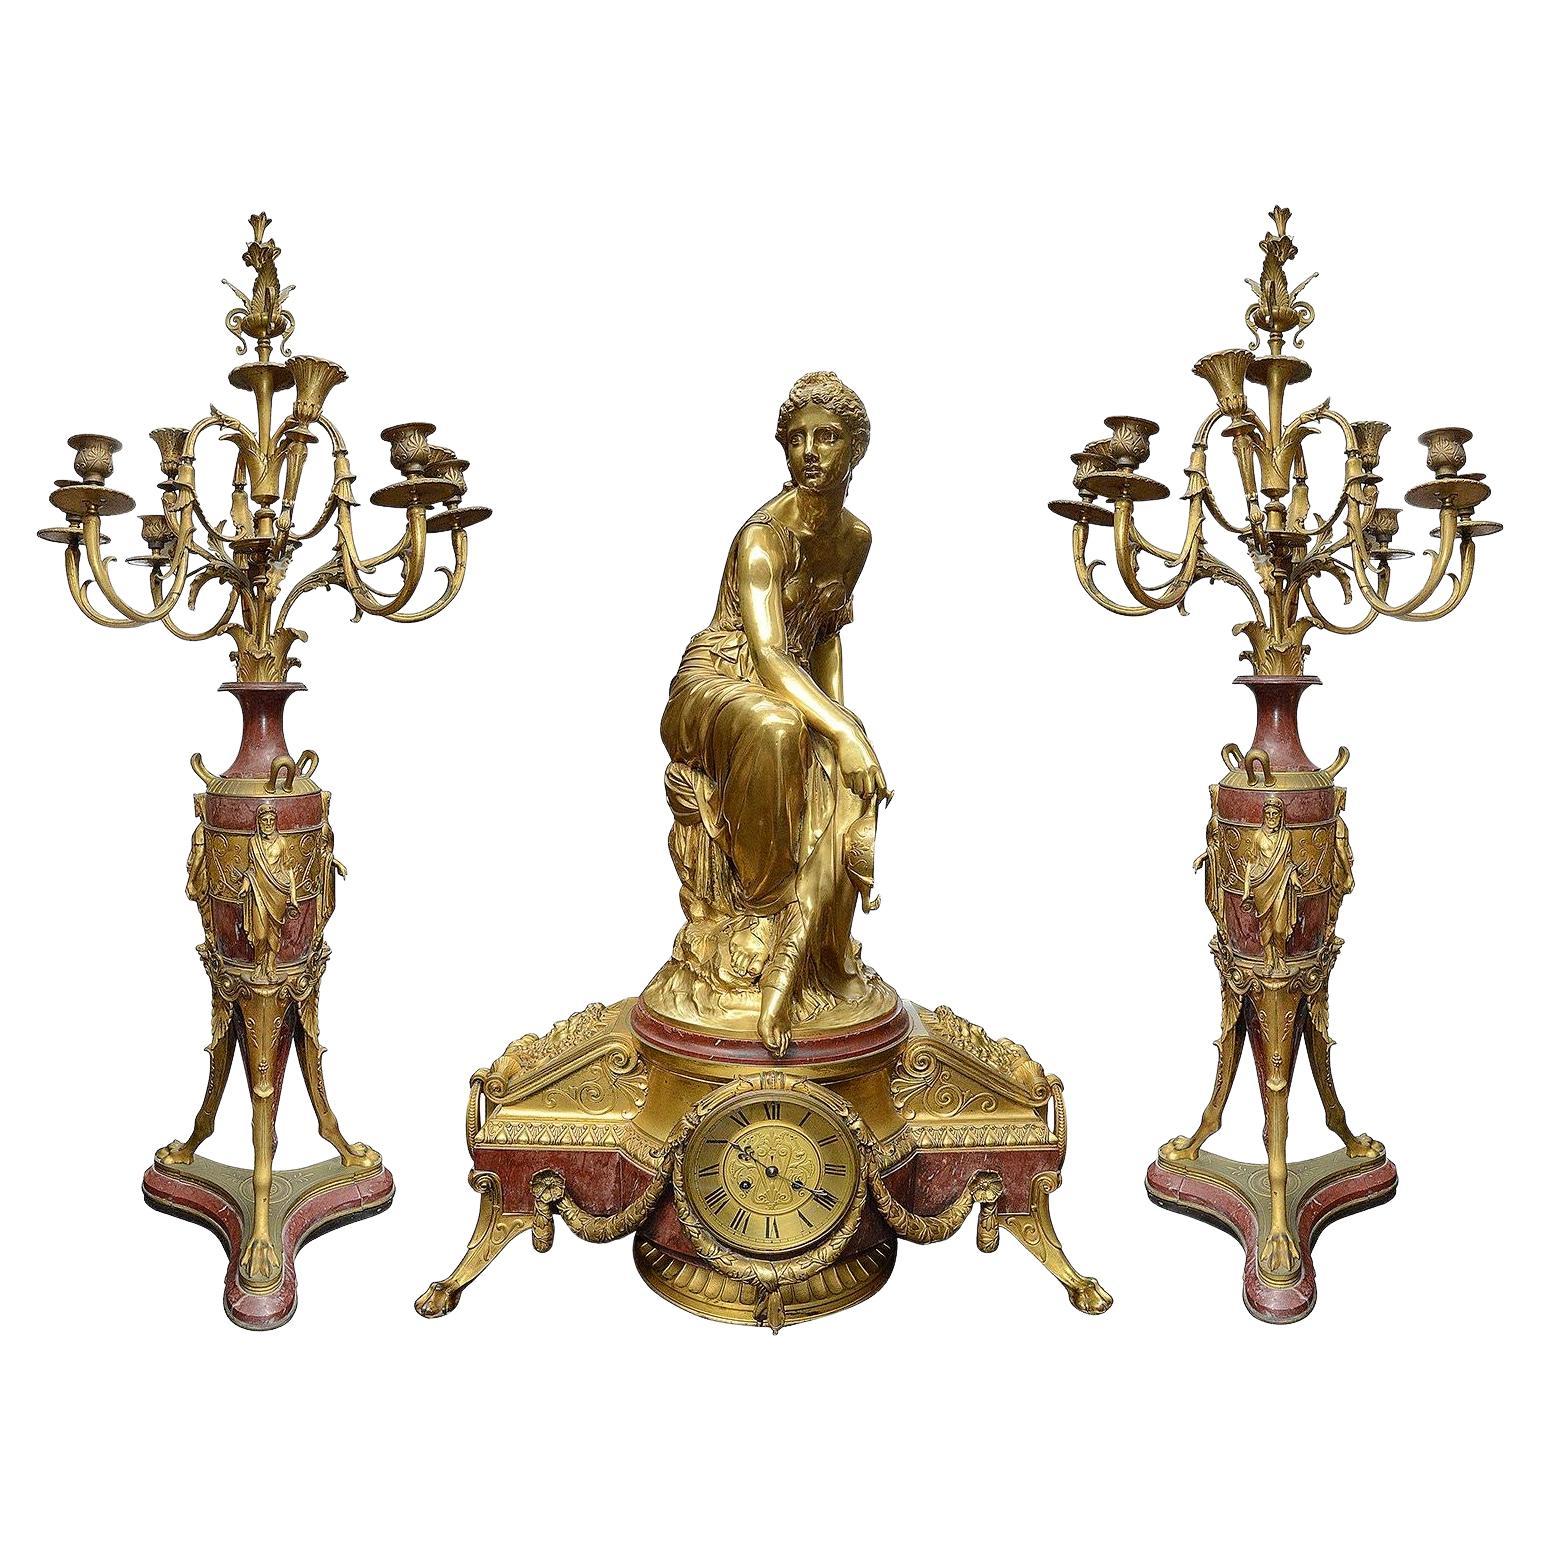 Grand ensemble d'horloges de style Louis XVI du 19ème siècle en bronze doré.